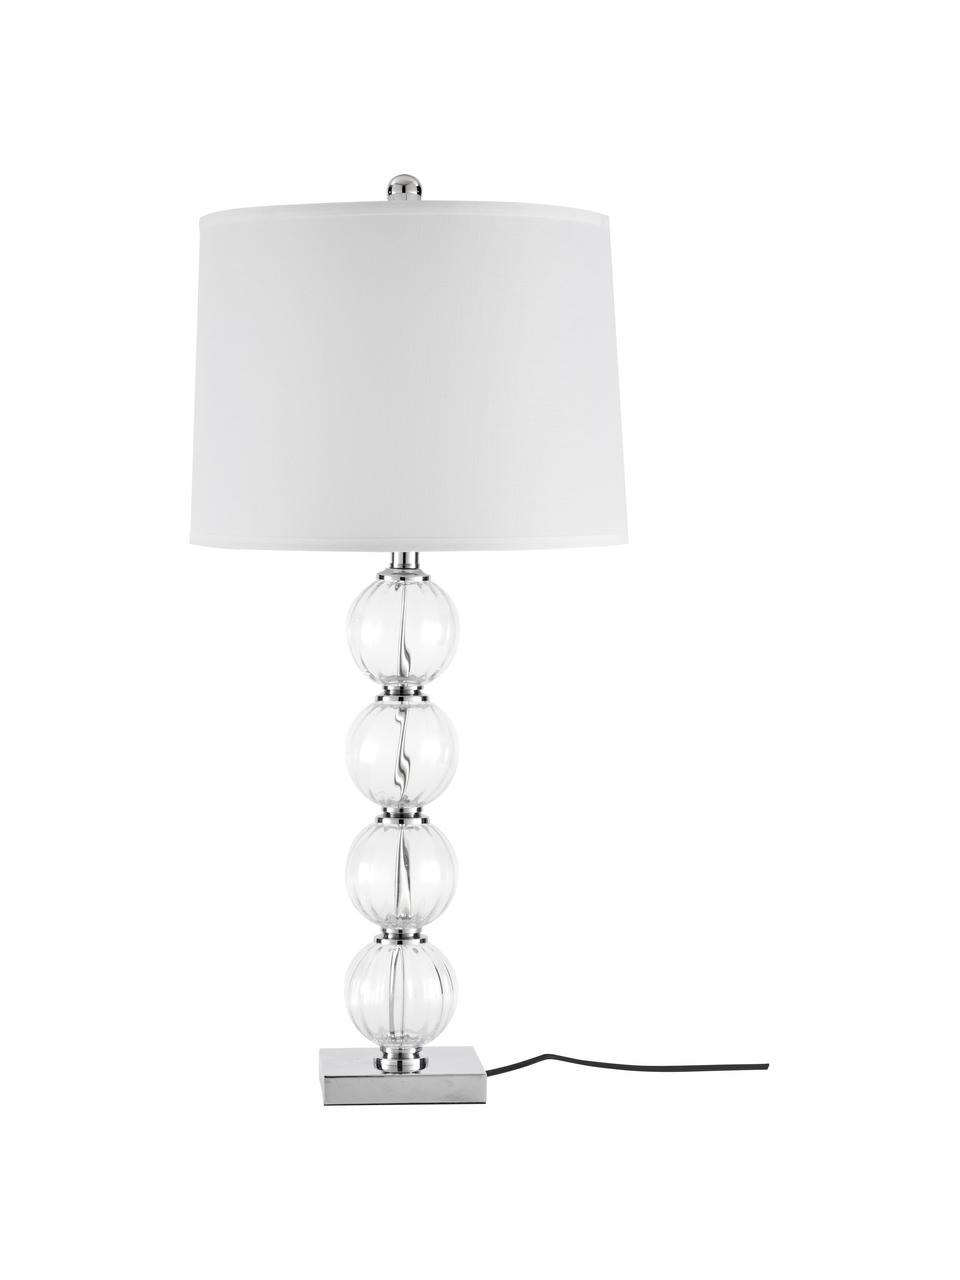 Große Tischlampen Luisa, 2 Stück, Lampenschirm: Polyester, Lampenfuß: Glas, Sockel: Metall, Weiß, Transparent, Ø 38 x H 76 cm